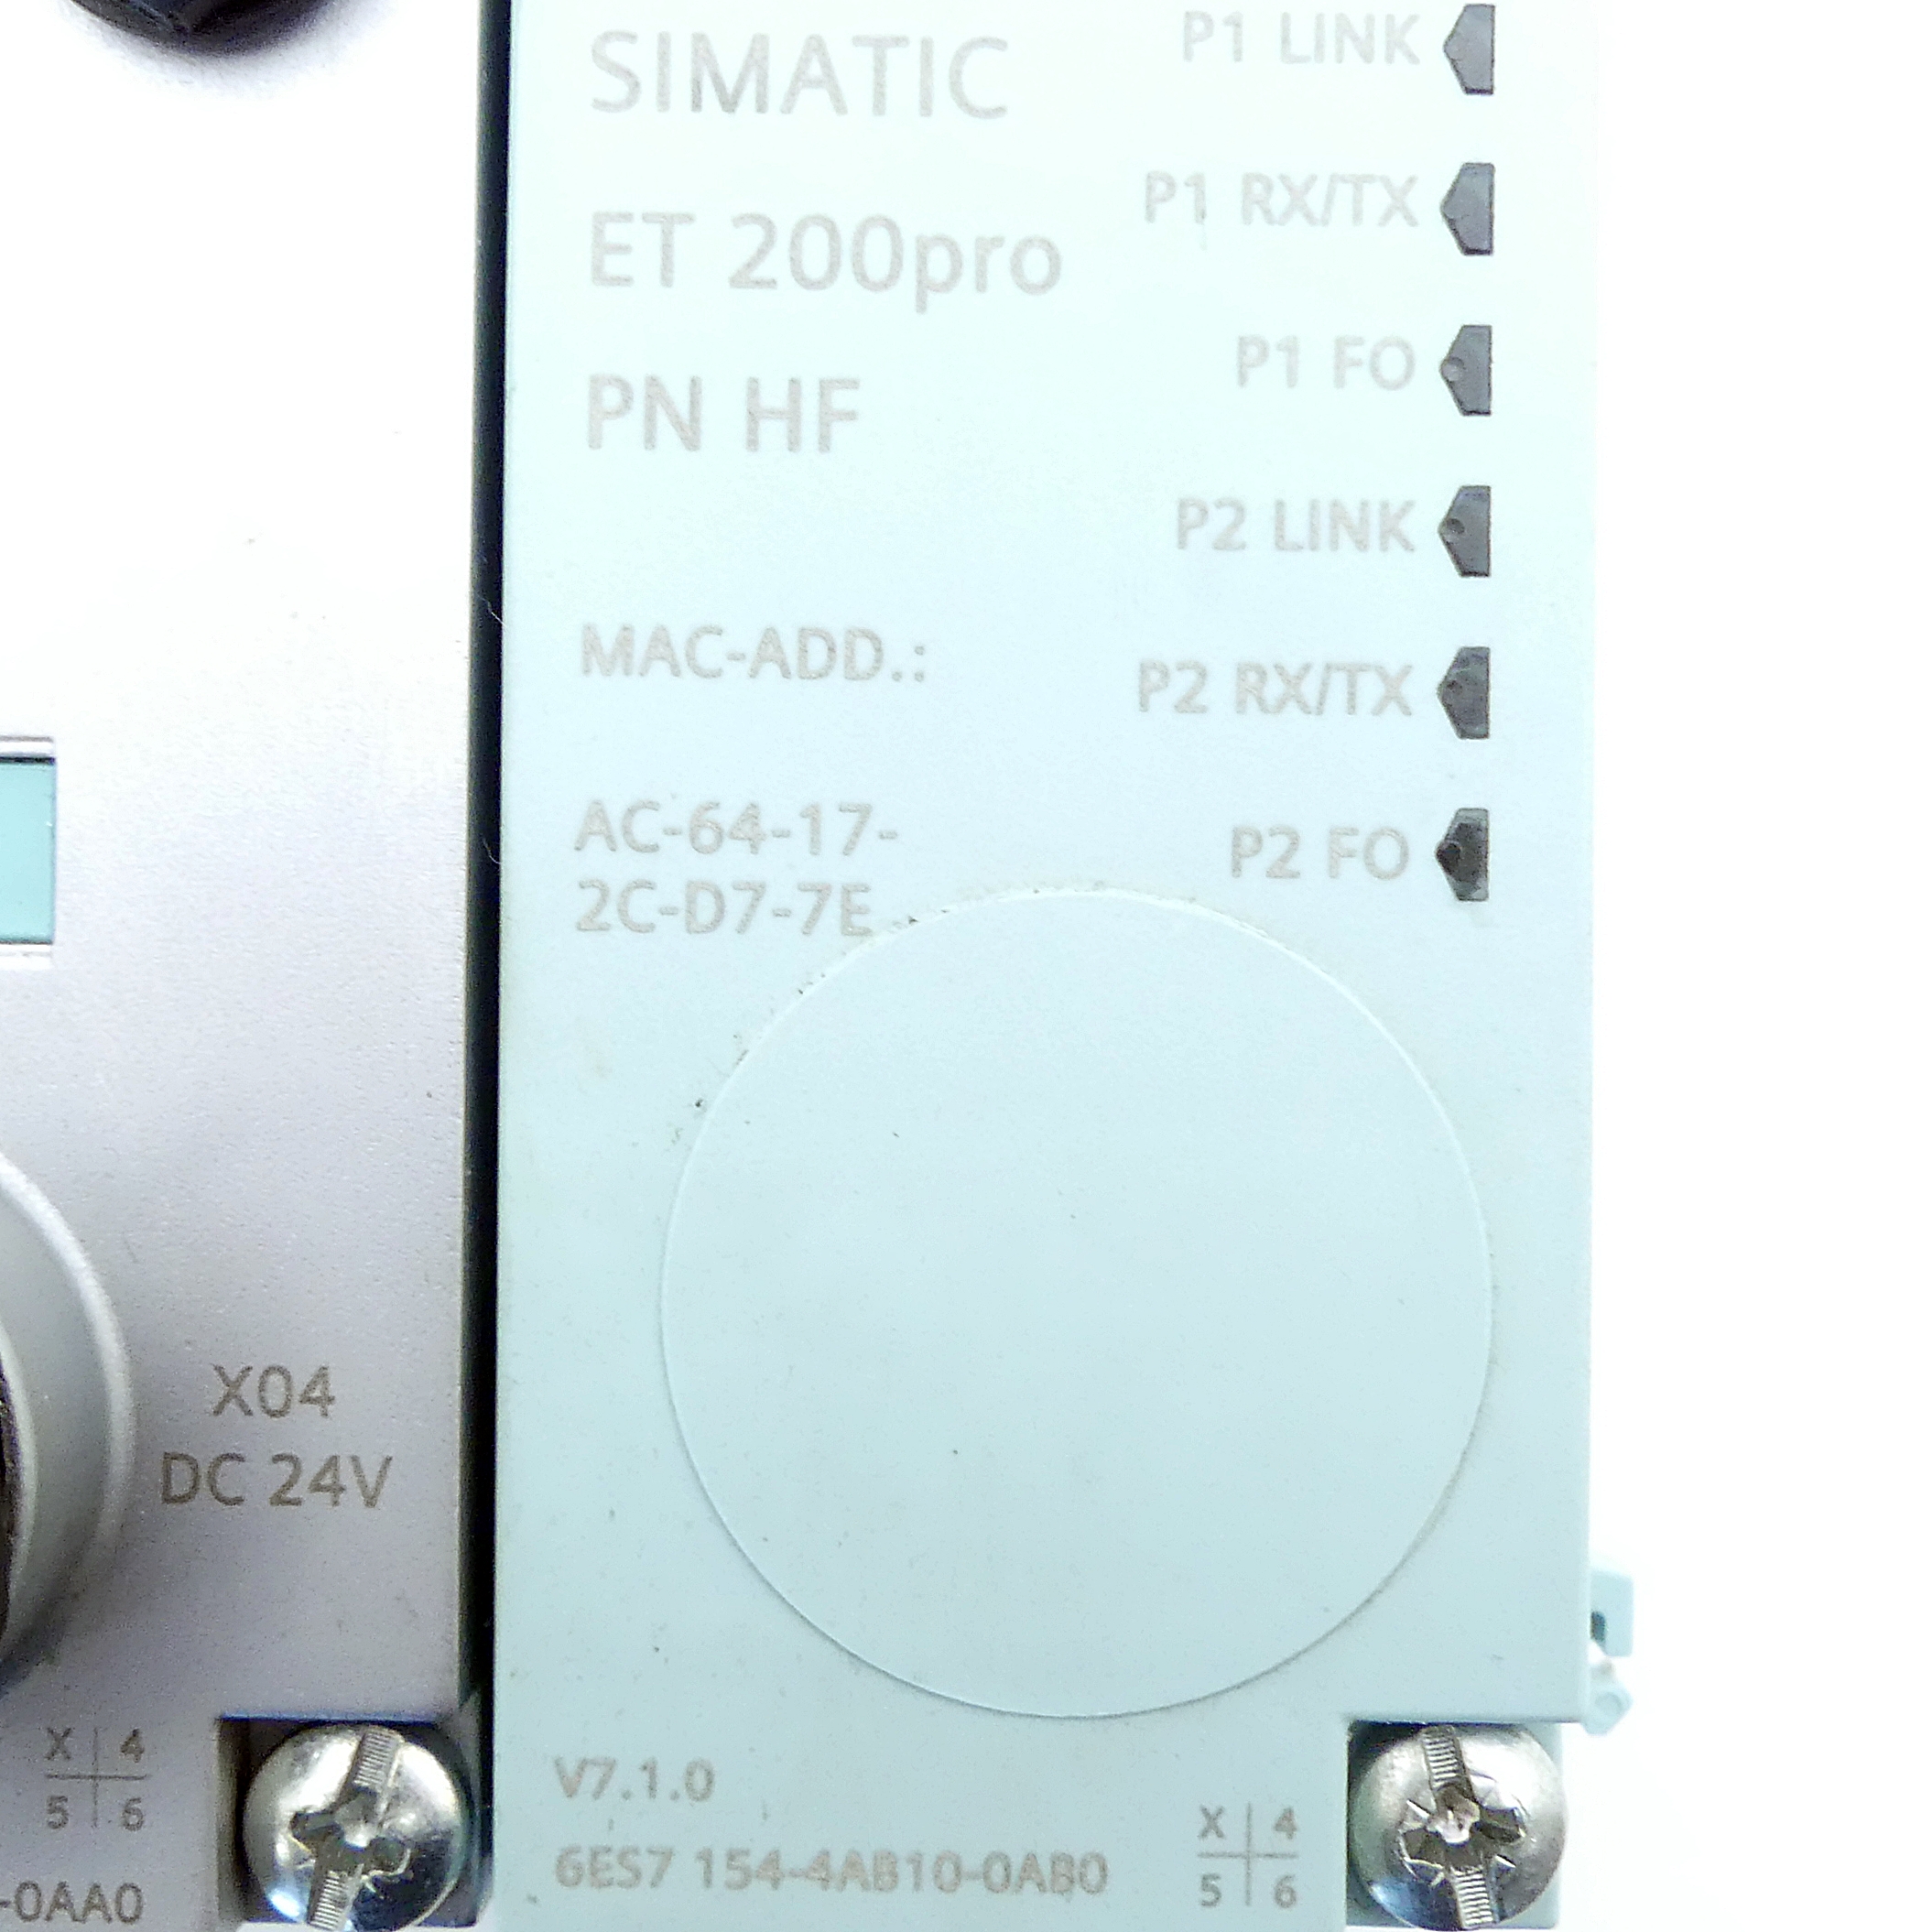 Interface module 6ES7 154-4AB10-0AB0 